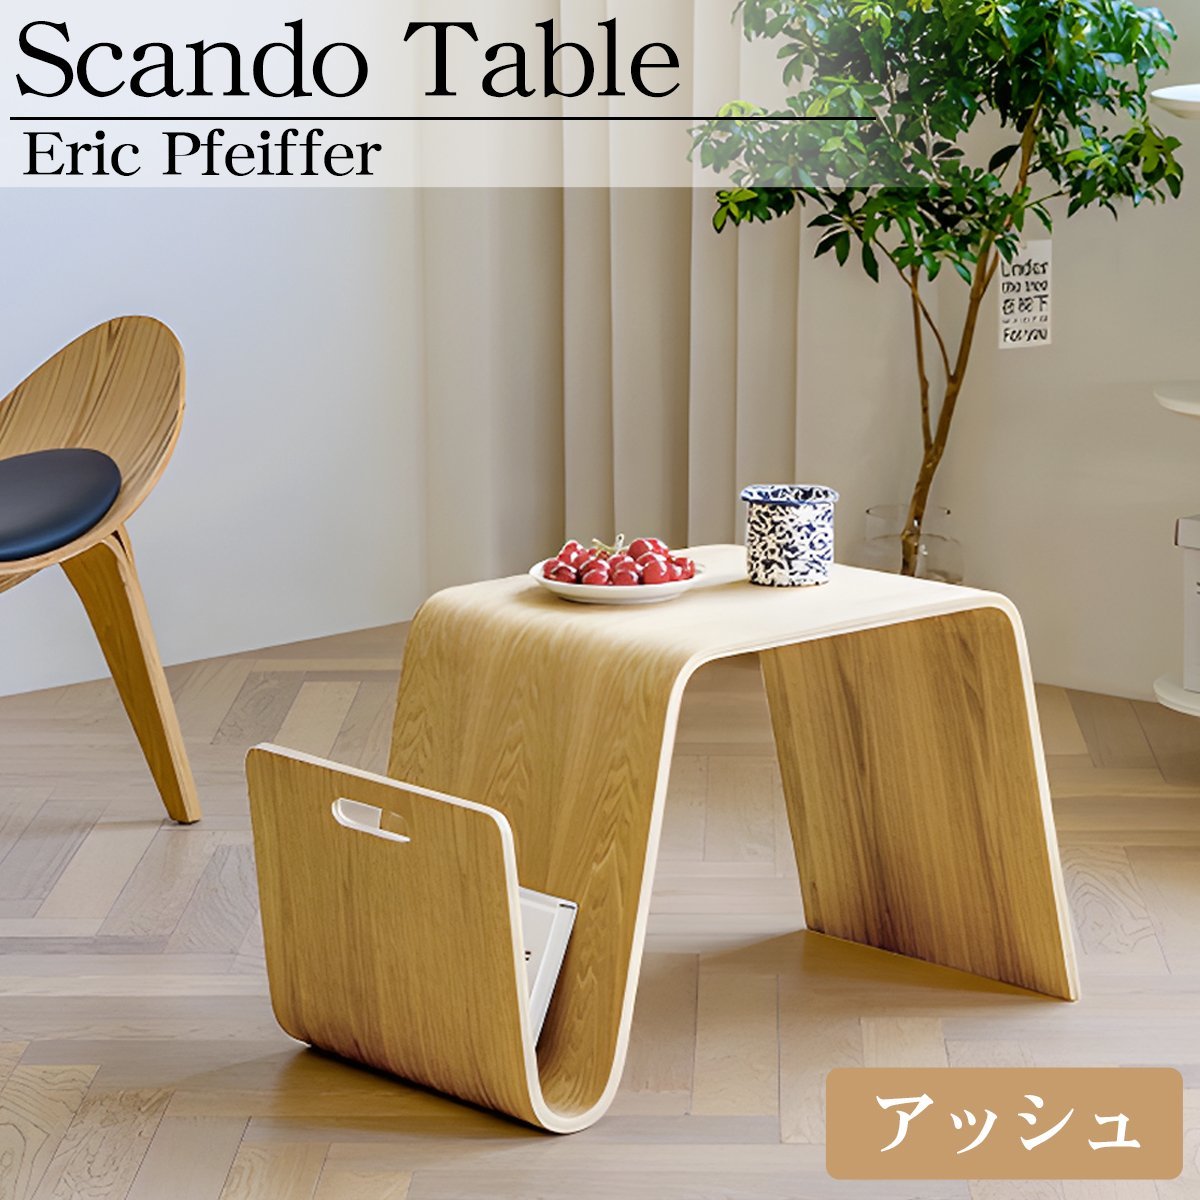 Scando table スキャンドゥ テーブル エリック ファイファー サイドテーブル 木製 北欧 おしゃれ モダン インテリア リビング SD-32BJ